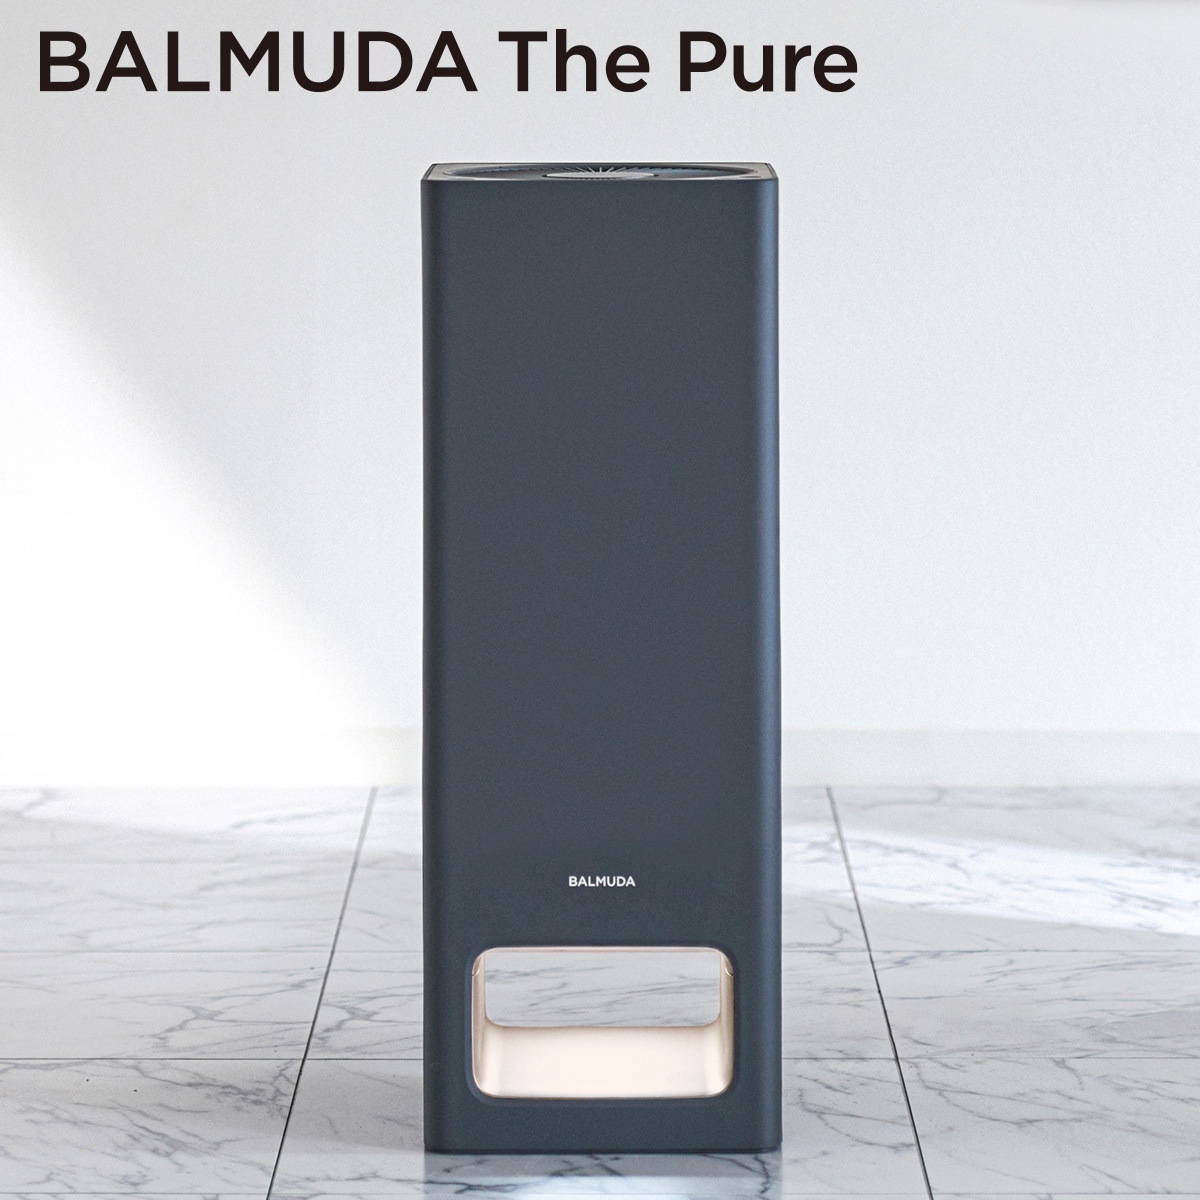 ひかりＴＶショッピング 「BALMUDA The Pure」 ザ・ピュア 空気清浄機 ダークグレー A01A-GR｜バルミューダ